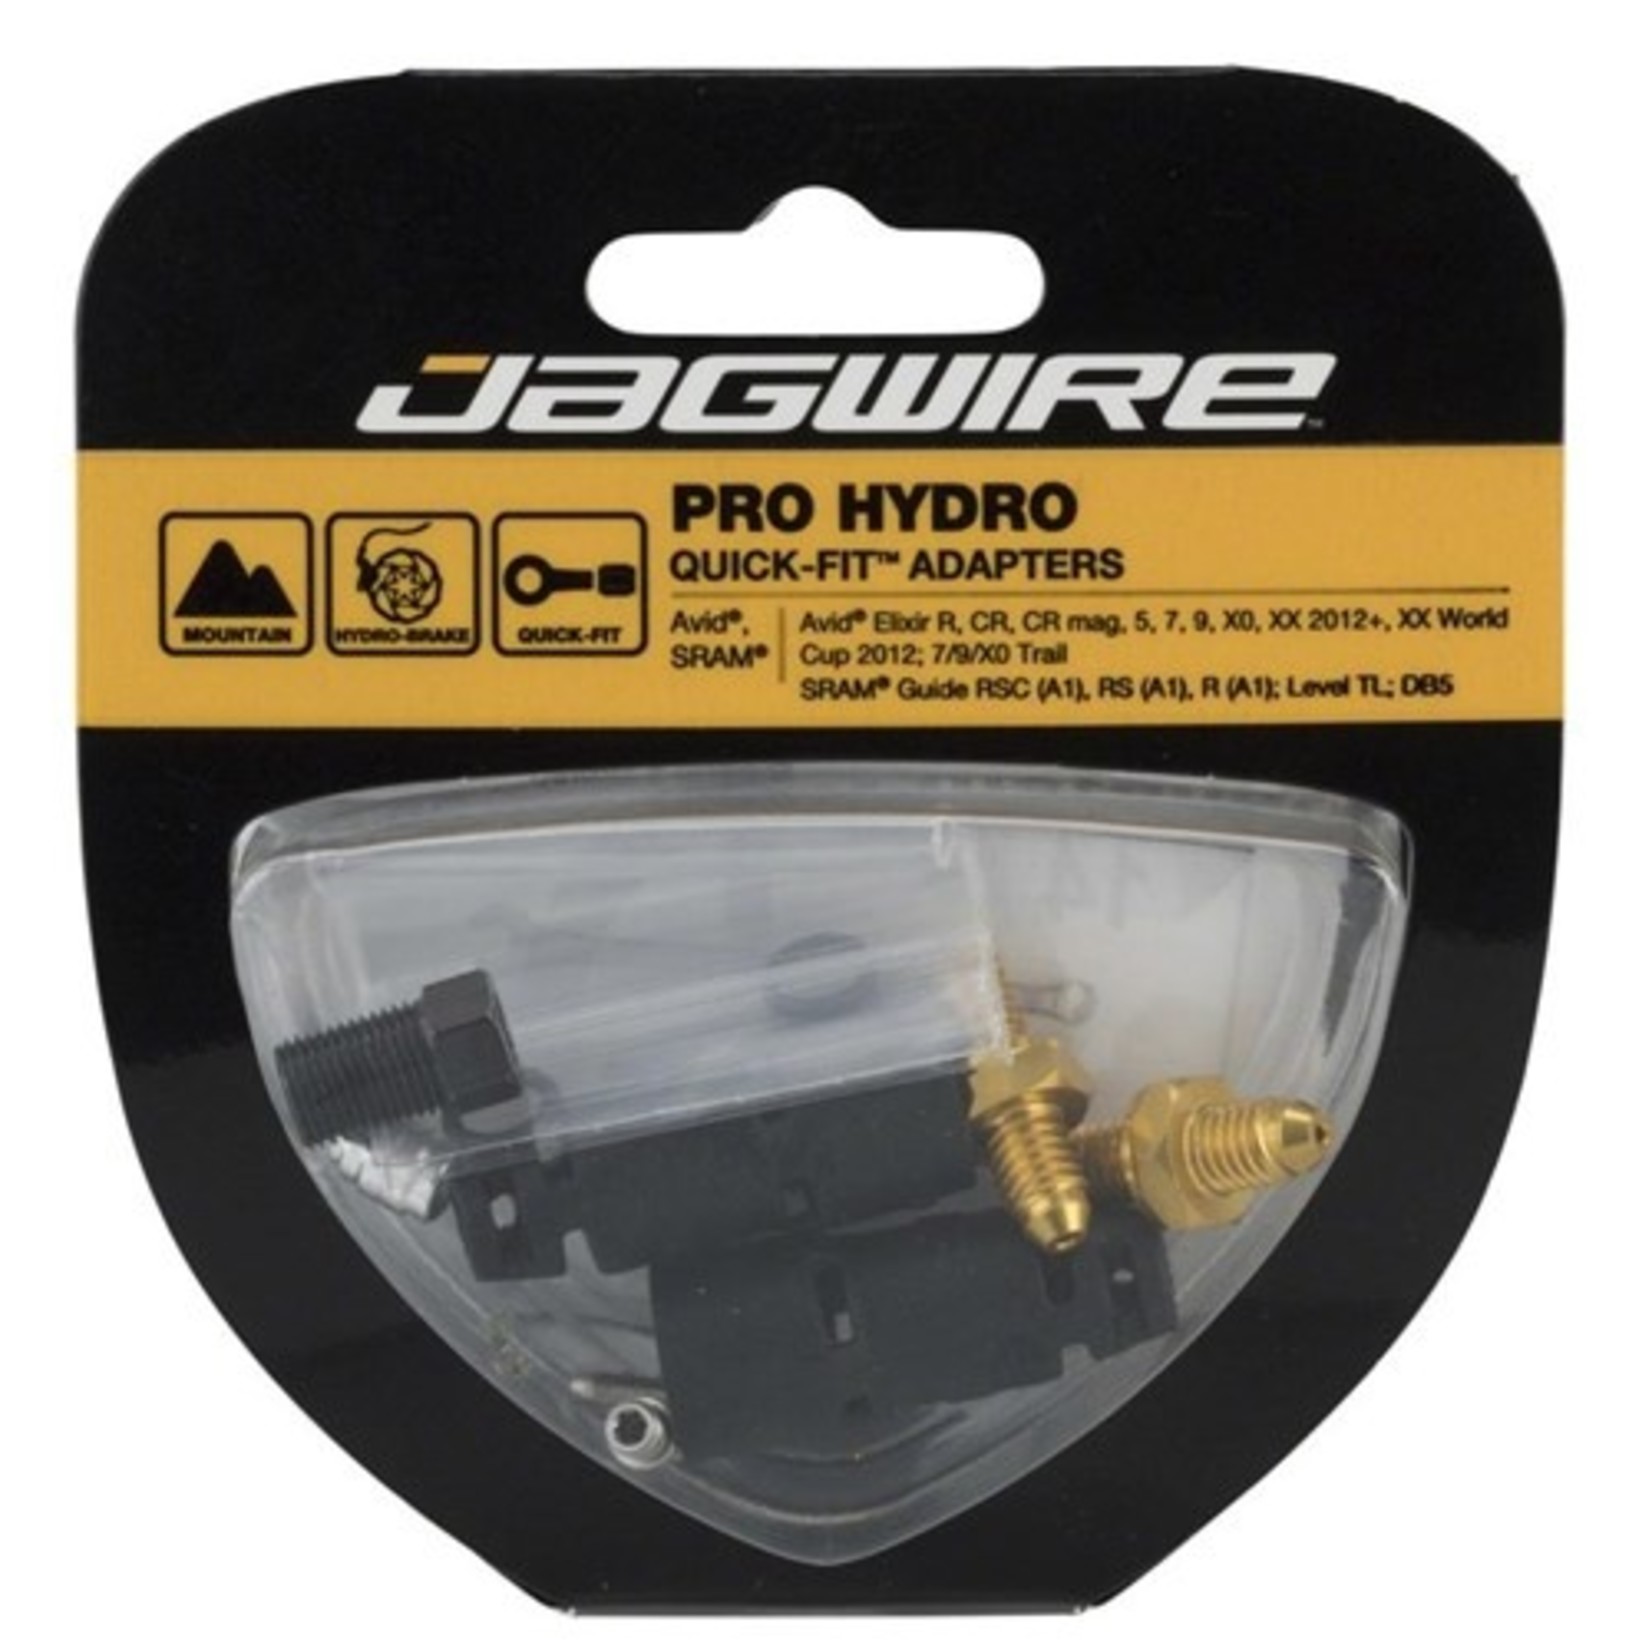 Jagwire Jagwire Pro Hydro Quick-Fit™Adapter Kit - Avid/SRAM/Shimano/Formula/ Hope/Hayes